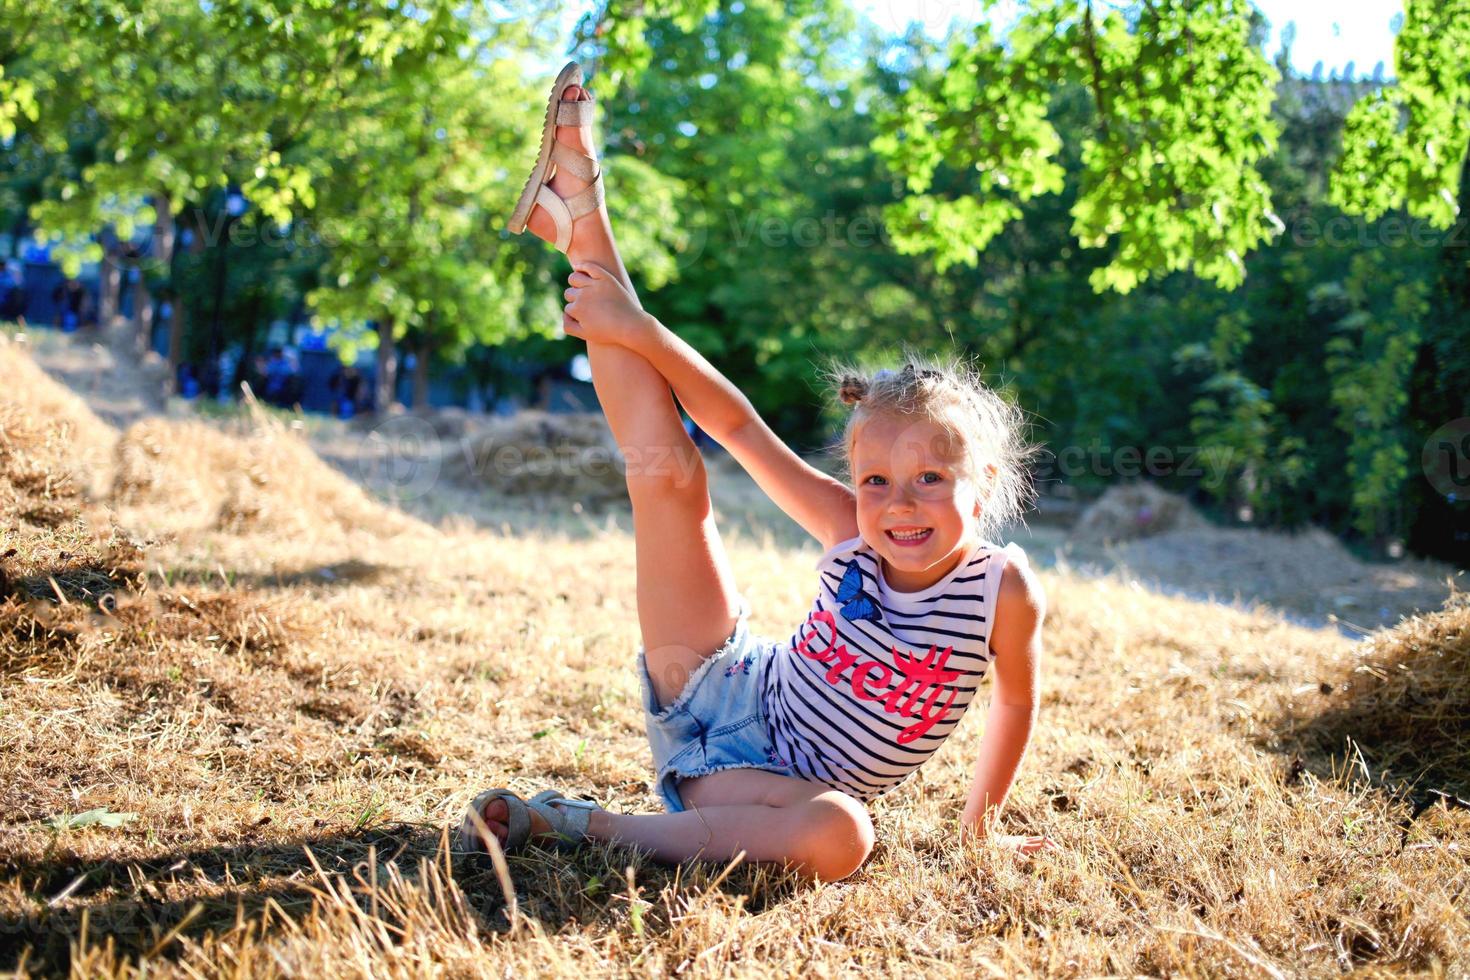 el pequeño niña levanta su pierna arriba, gimnasia ejercicios en naturaleza. flexible niño, aptitud física, extensión, yoga, Deportes, aprendiendo. foto